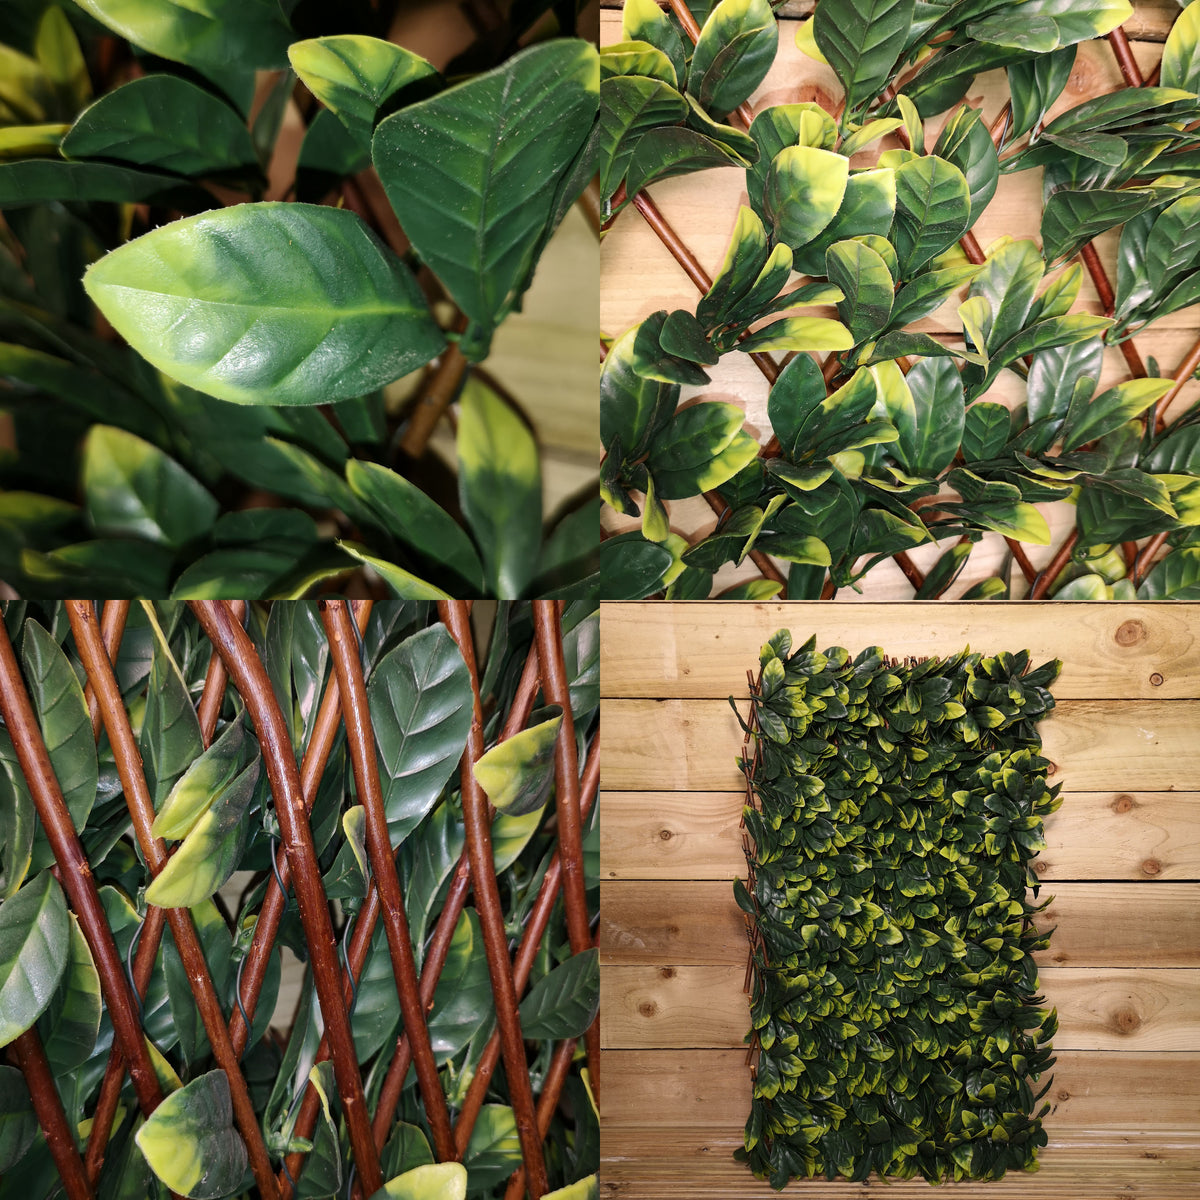 180cm x 60cm Artificial Fence Garden Trellis Privacy Screening Indoor Outdoor Wall Panel - Laurel Leaf